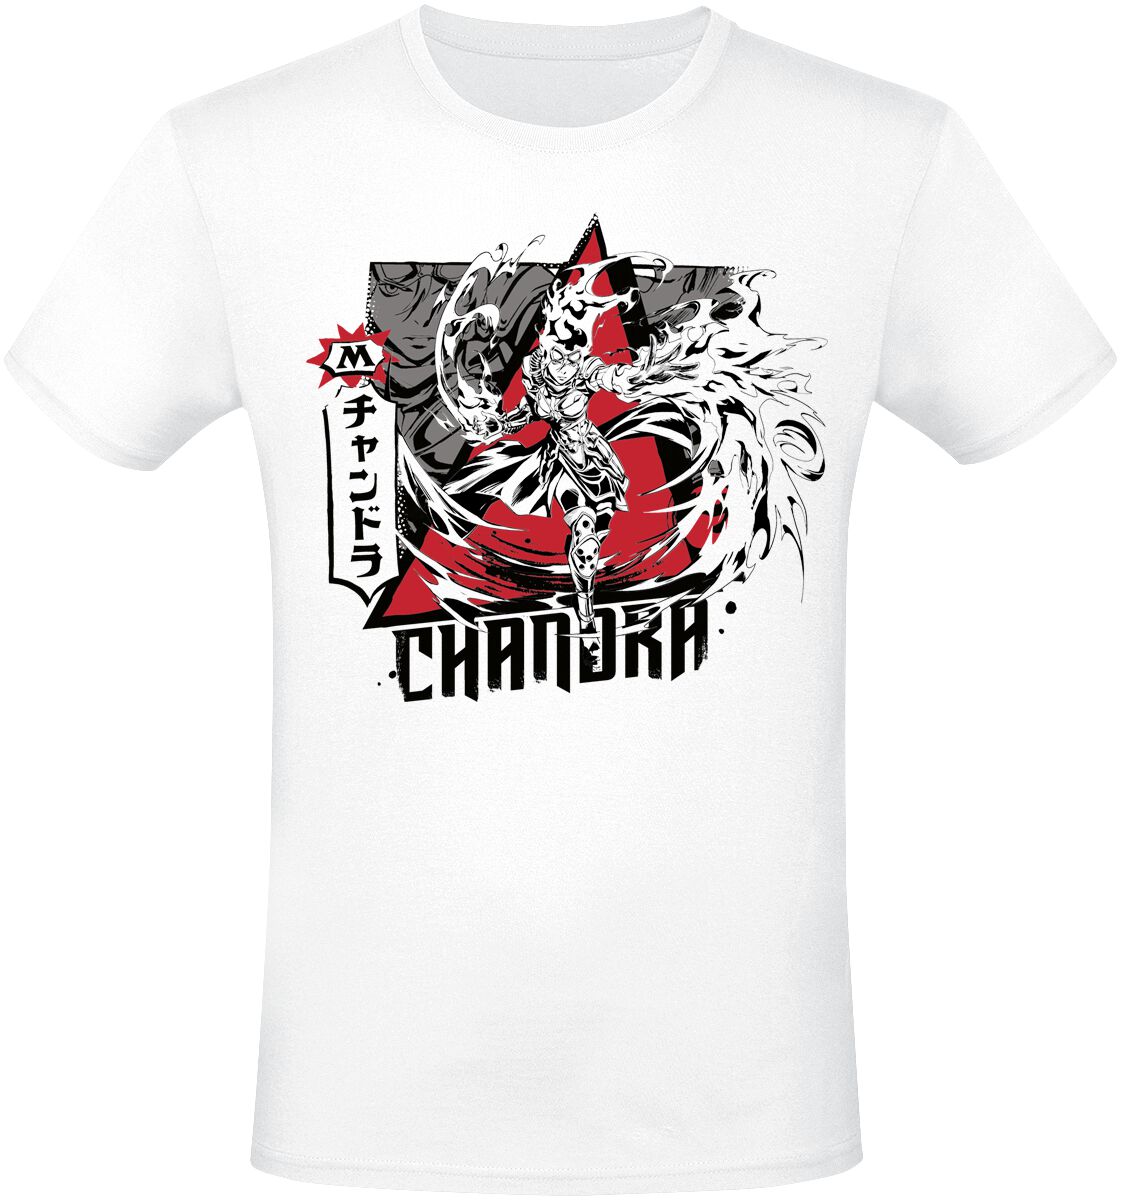 Magic: The Gathering - Gaming T-Shirt - Chandra - S bis XXL - für Männer - Größe M - weiß  - EMP exklusives Merchandise!